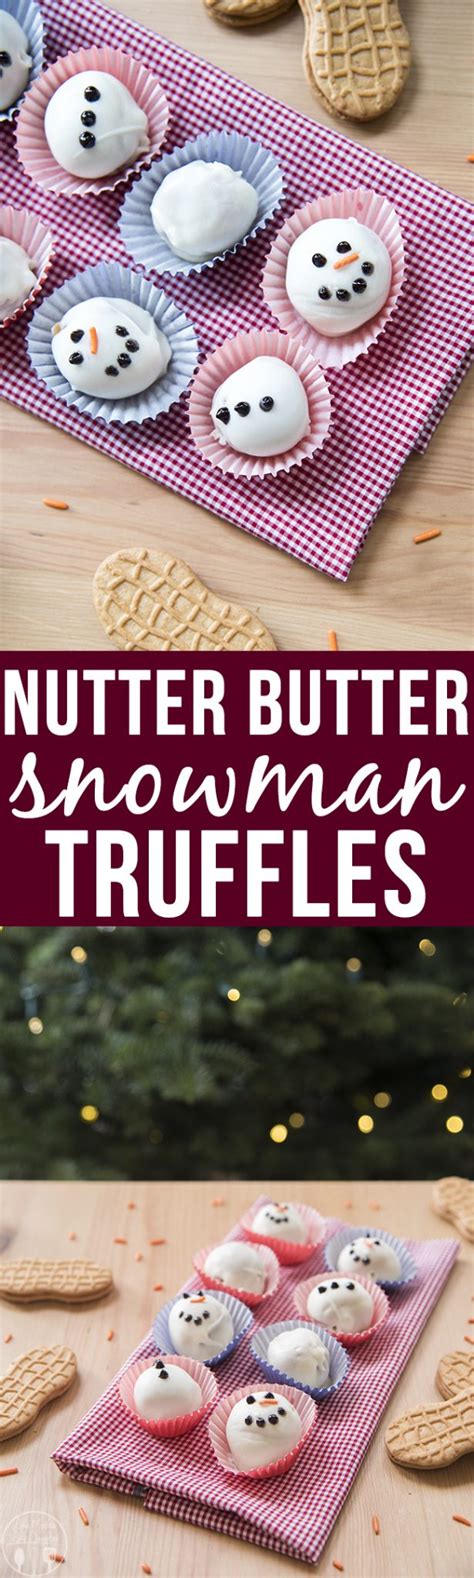 homemade nutter butter cookiesimage (imgur.com). Nutter Butter Snowman Truffles - LMLDfood